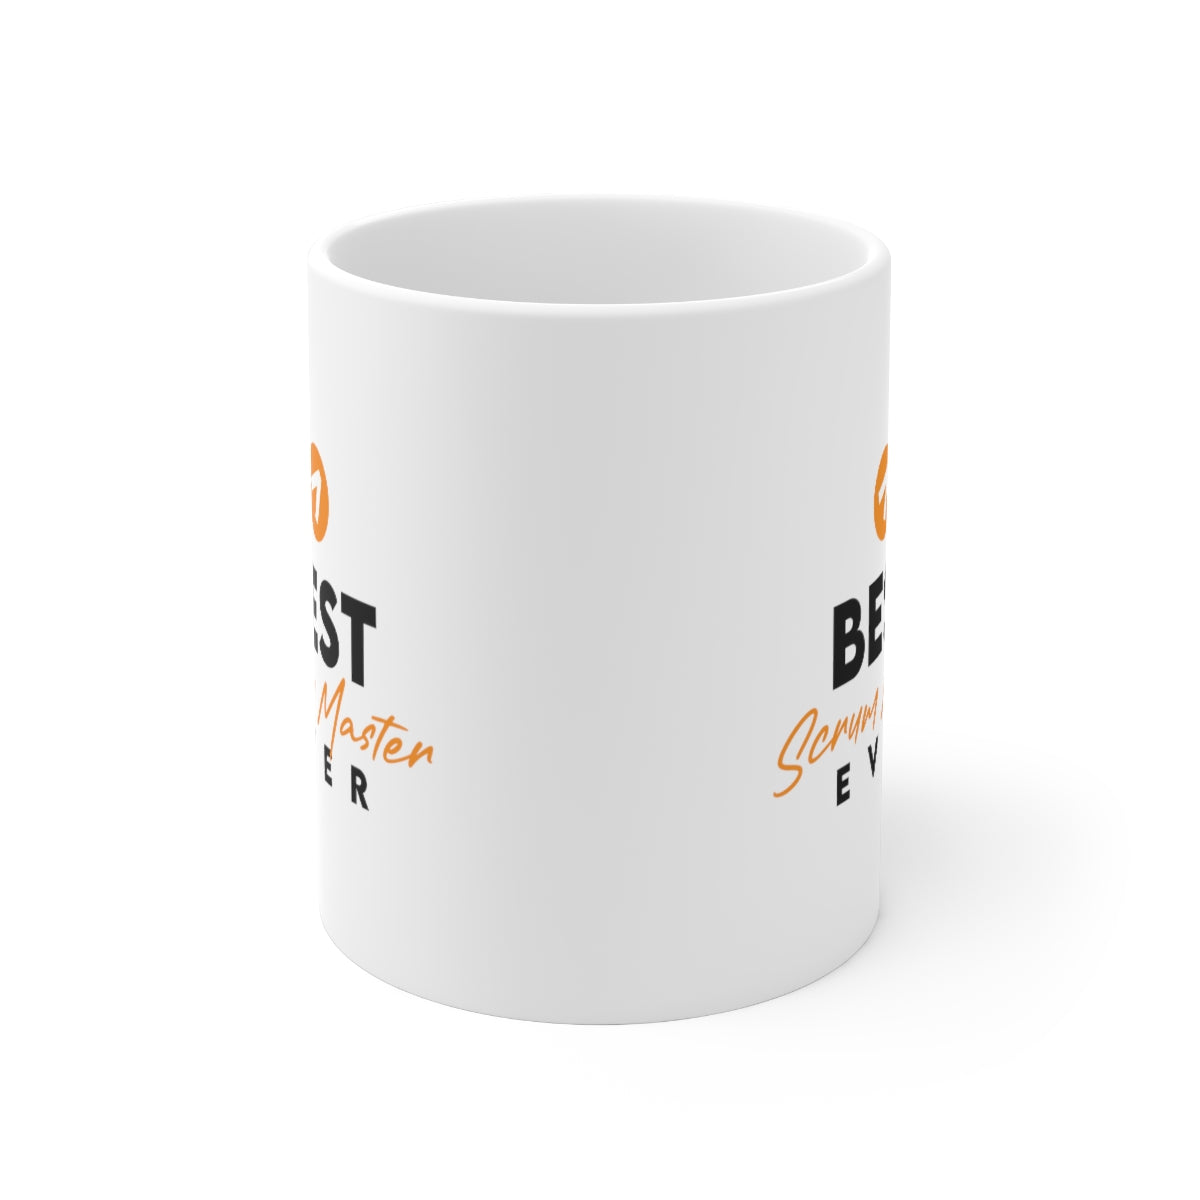 Best Scrum Master ever - Orange - Ceramic Mug 11oz